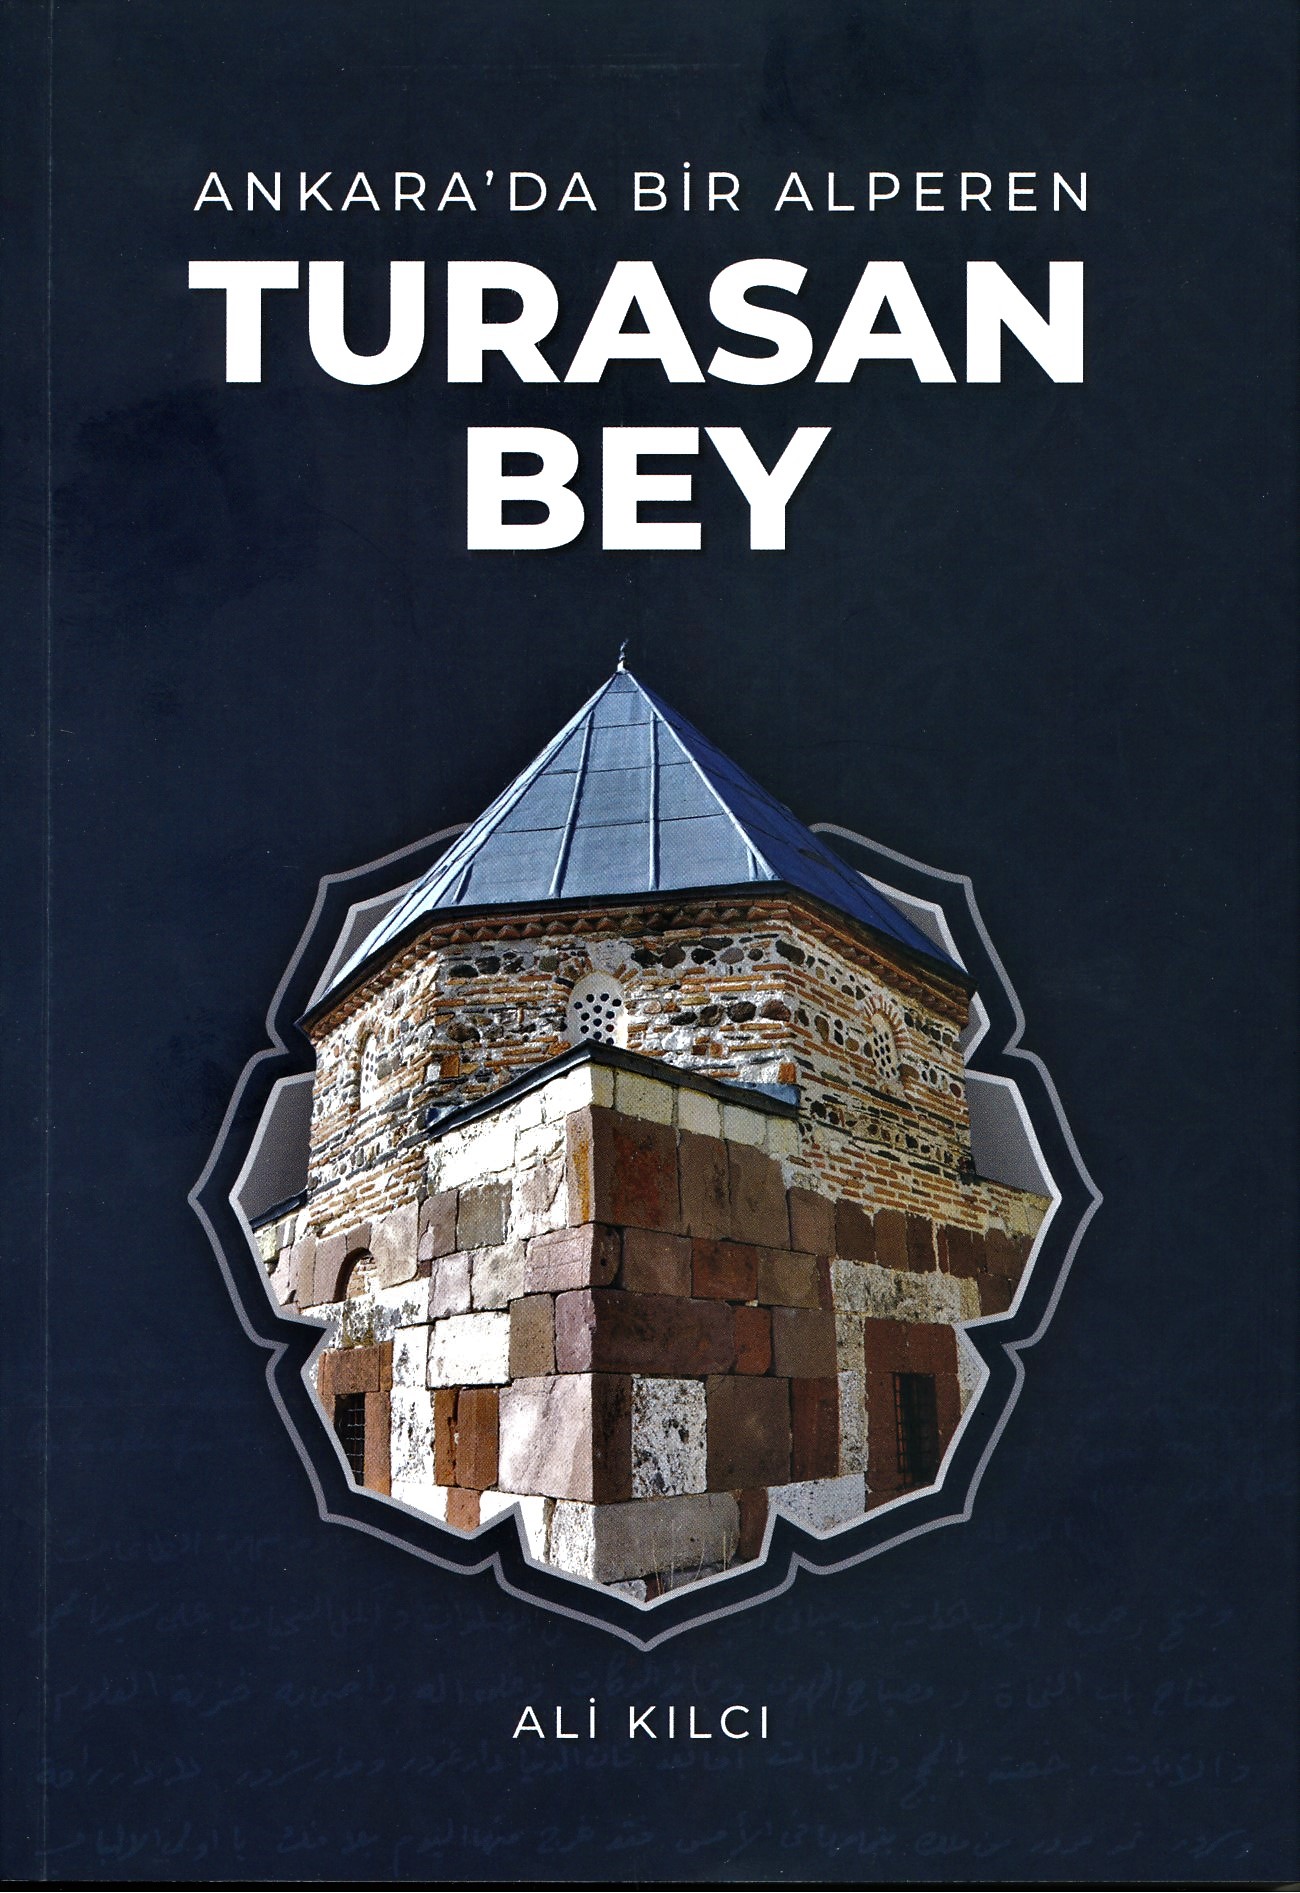 Ali Kılcı’nın yeni kitabı “Turasan Bey” çıktı